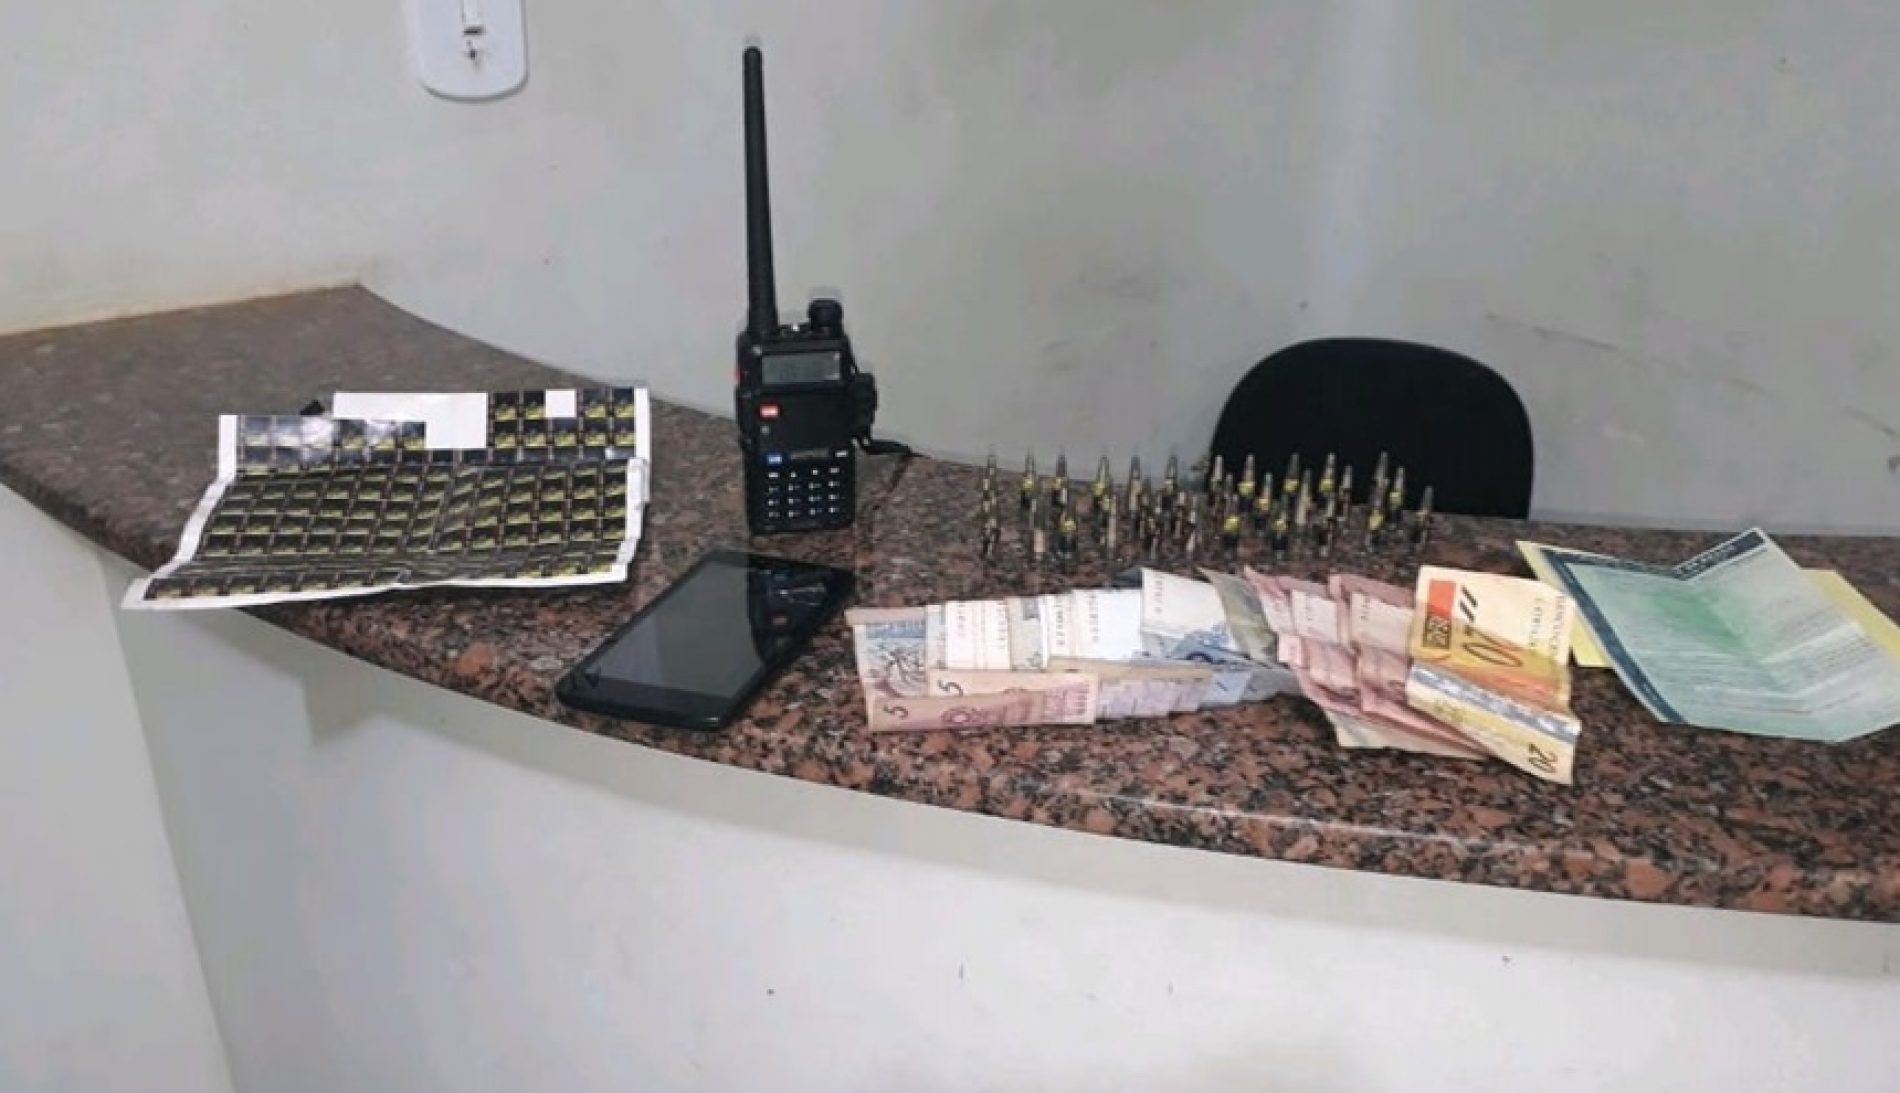 OLÍMPIA: Policia prende “Bonitinho” traficando drogas e apreende rádio comunicador, dinheiro e outros objetos